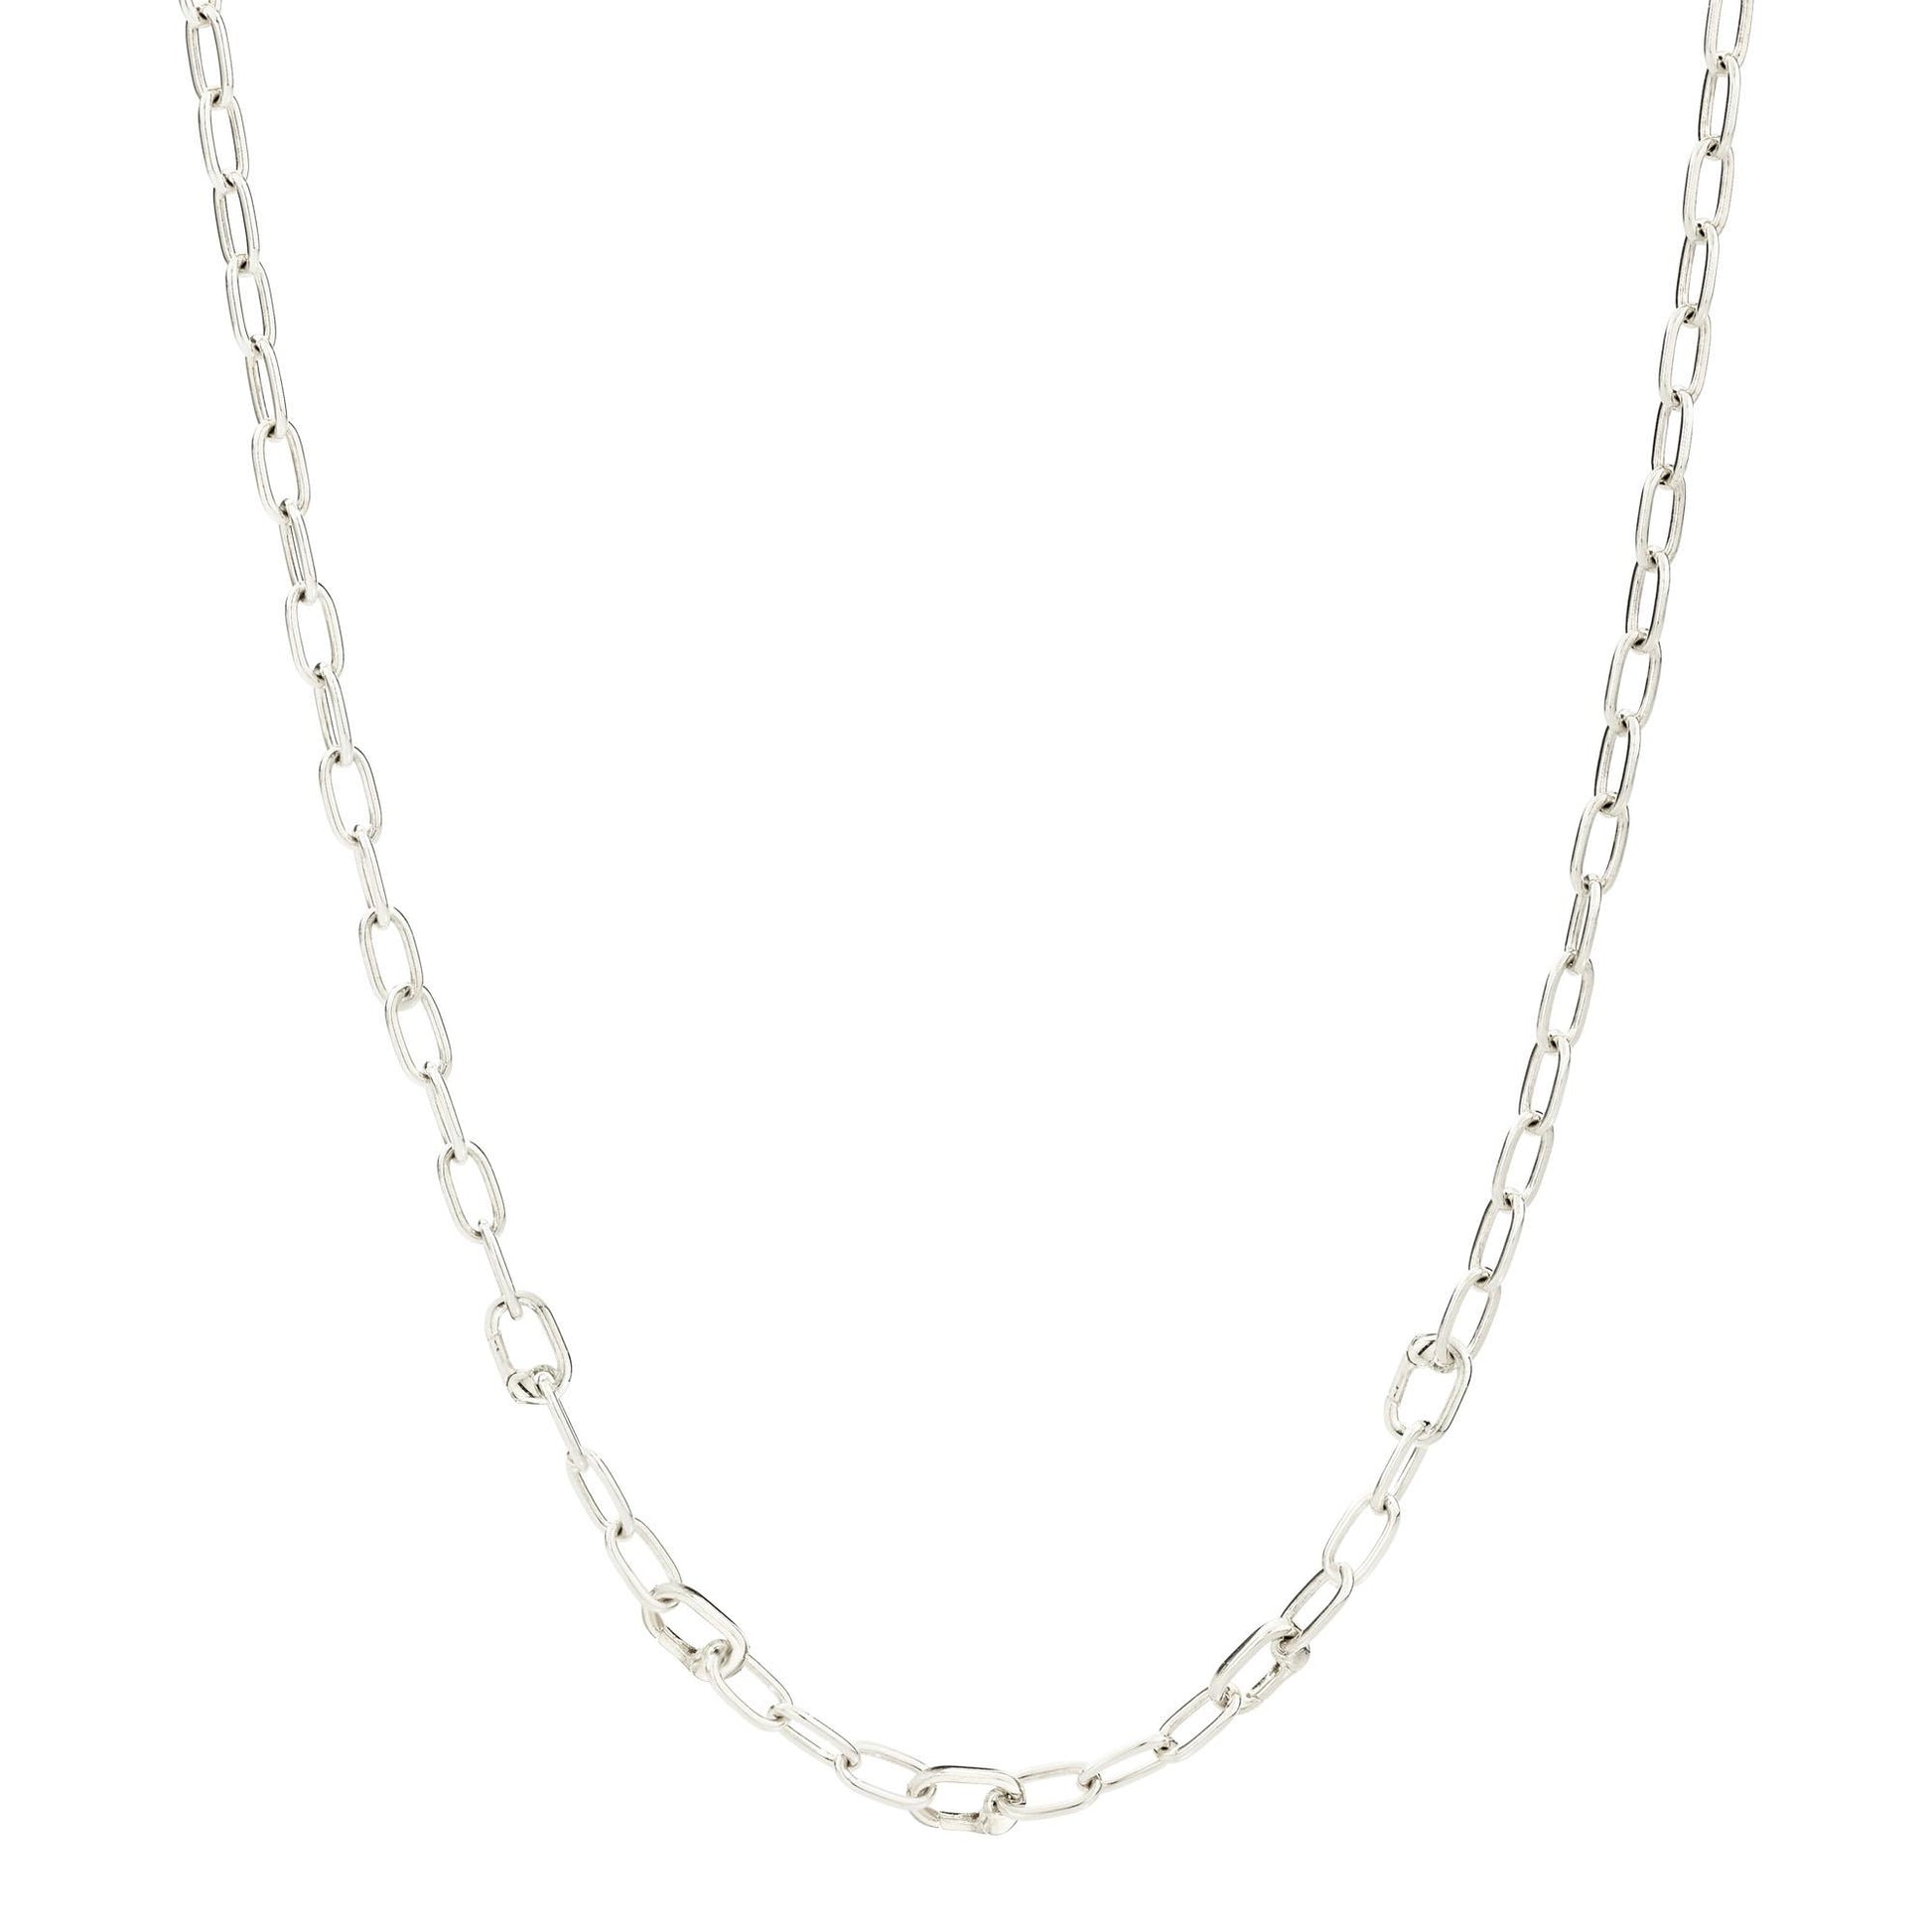 Halskette Essentials mit aufklappbaren Gliedern, Silber - 40 cm von DoDo (DCC1004-CHAIN-000AG) online kaufen